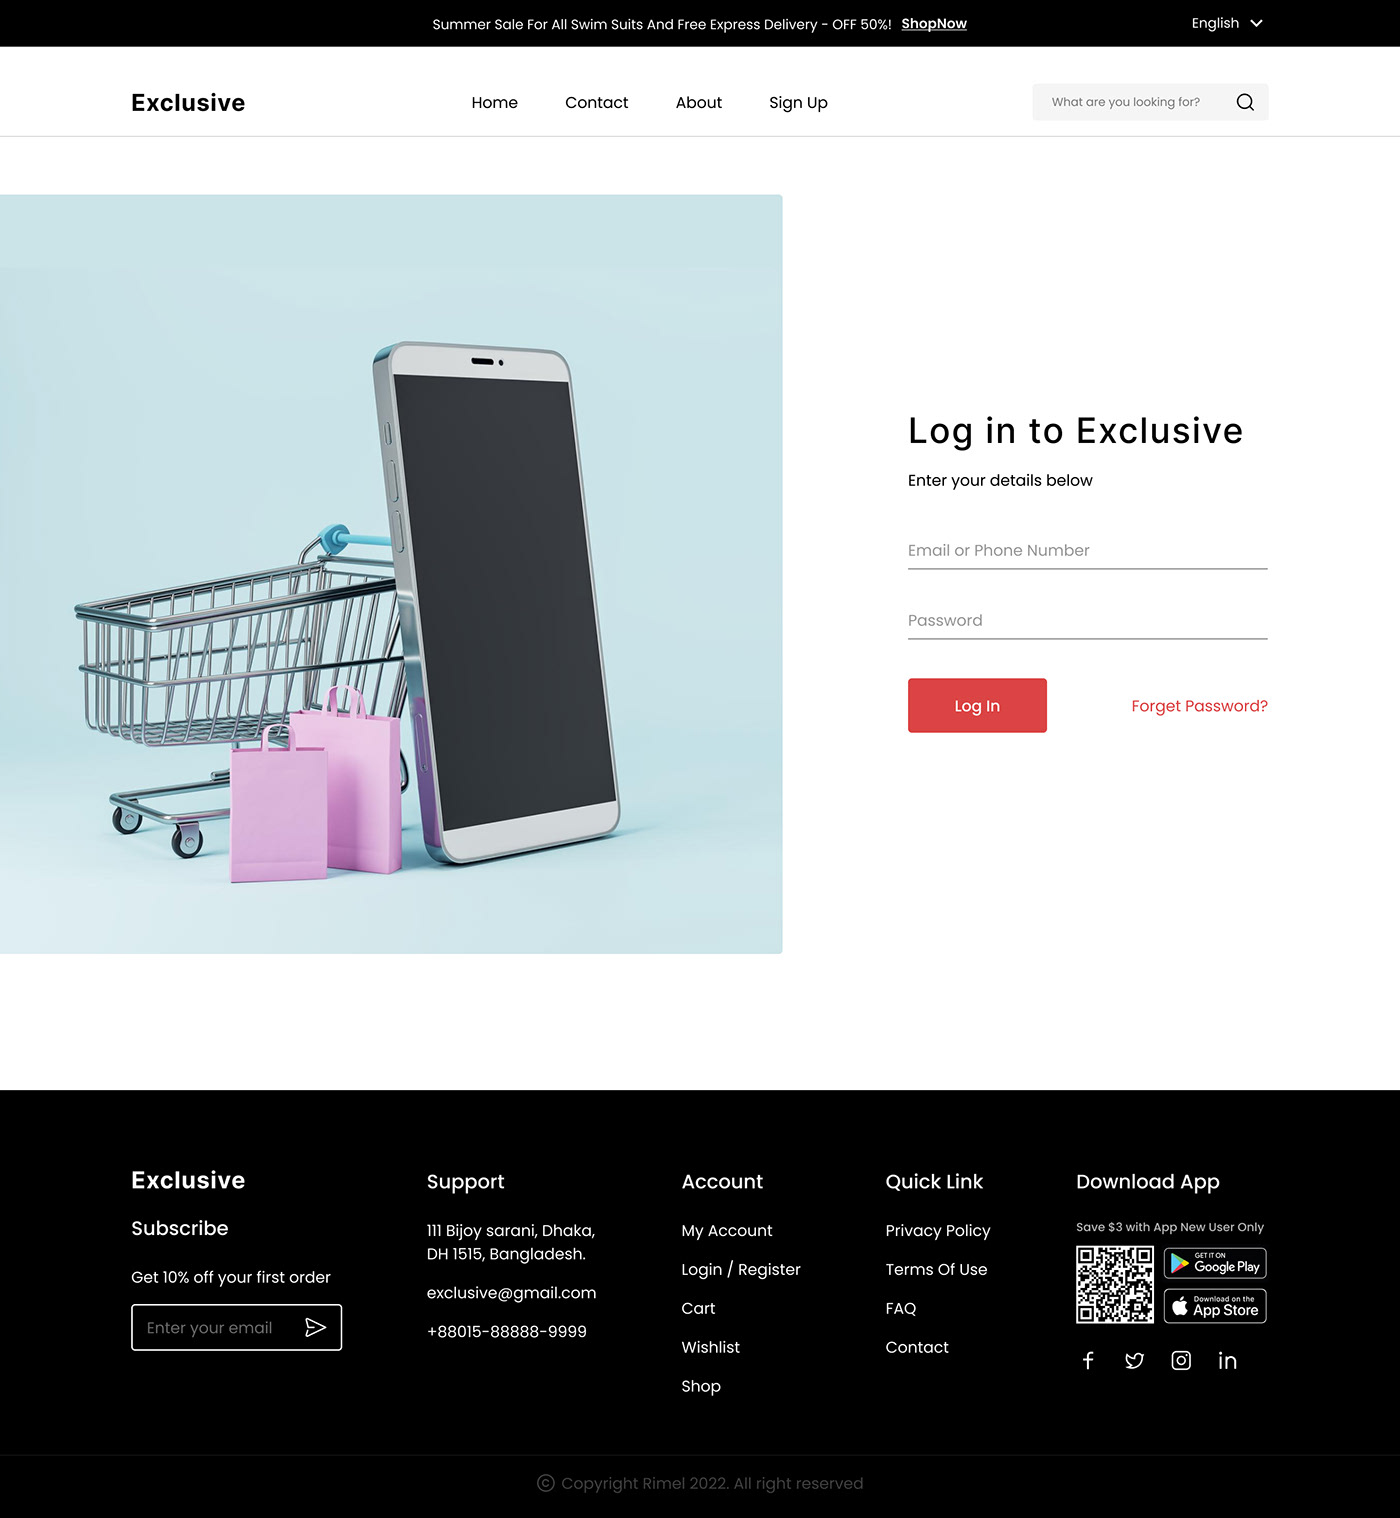 ecommerce website eCommerce design landing page UI/UX Figma ui design ux/ui eCommerce Web Design store Online Shopping Store